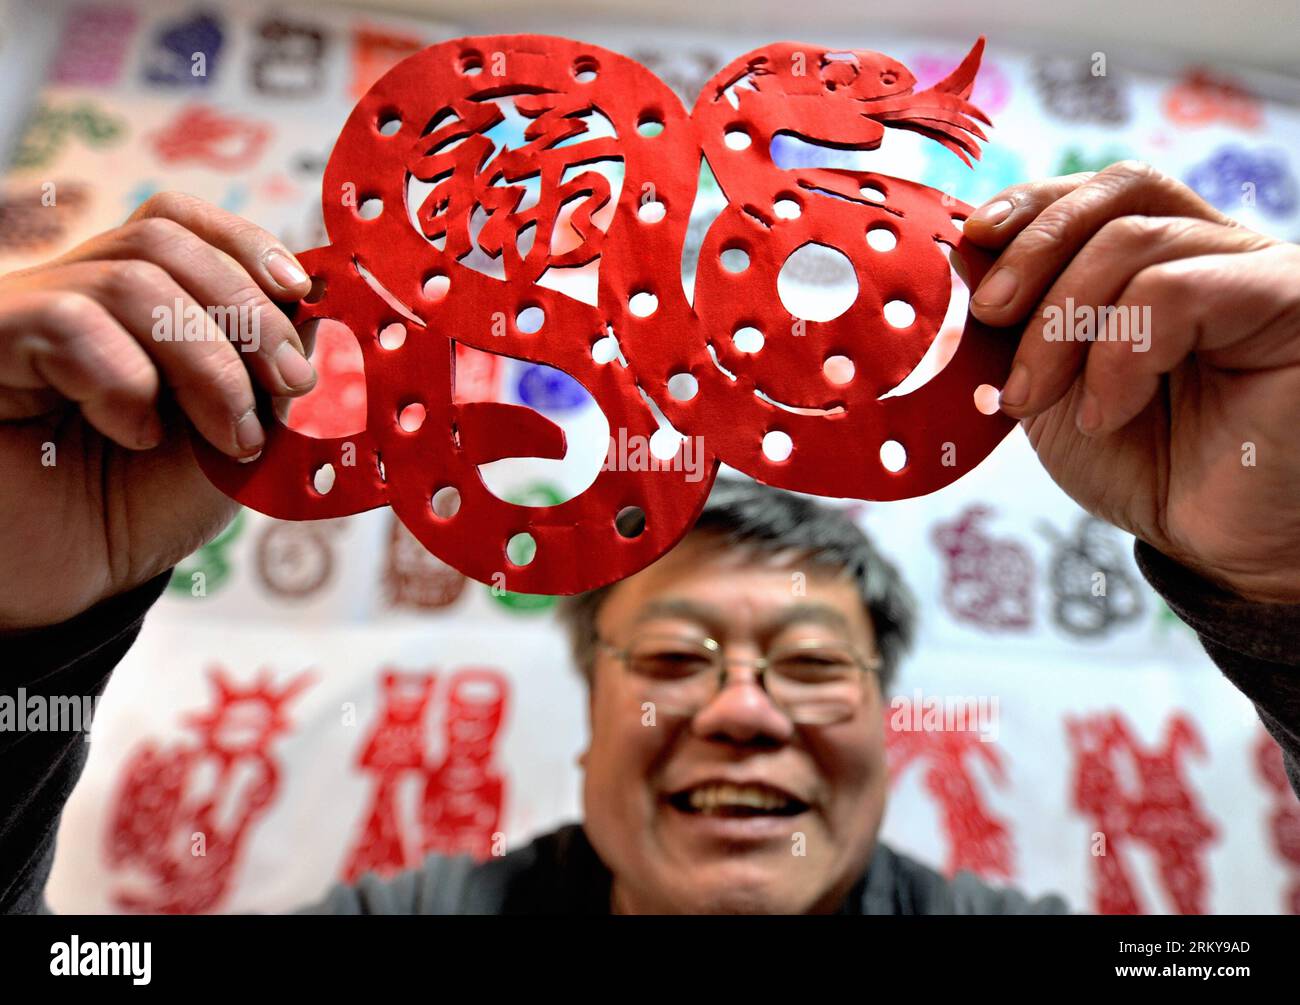 Bildnummer : 59172377 Datum : 04.02.2013 Copyright : imago/Xinhua (130204) -- XUZHOU, 4 février 2013 (Xinhua) -- l'artiste folklorique Chen Yongnian présente sa coupe de papier de serpent à Xuzhou, dans la province de Jiangsu de l'est de la Chine, le 4 février 2013. Chen a passé plus d'un mois à créer plus de 130 œuvres d'art découpées de serpents pour célébrer la prochaine année chinoise du serpent. (Xinhua/Li Ming) (mp) CHINA-JIANGSU-XUZHOU-PAPER-CUT ARTIST (CN) PUBLICATIONxNOTxINxCHN Kultur Tradition Kunsthandwerk Papierschnitt Jahr der Schlange x0x xst 2013 quer Highlight Premiumd 59172377 Date 04 02 2013 Copyright Imago XI Banque D'Images